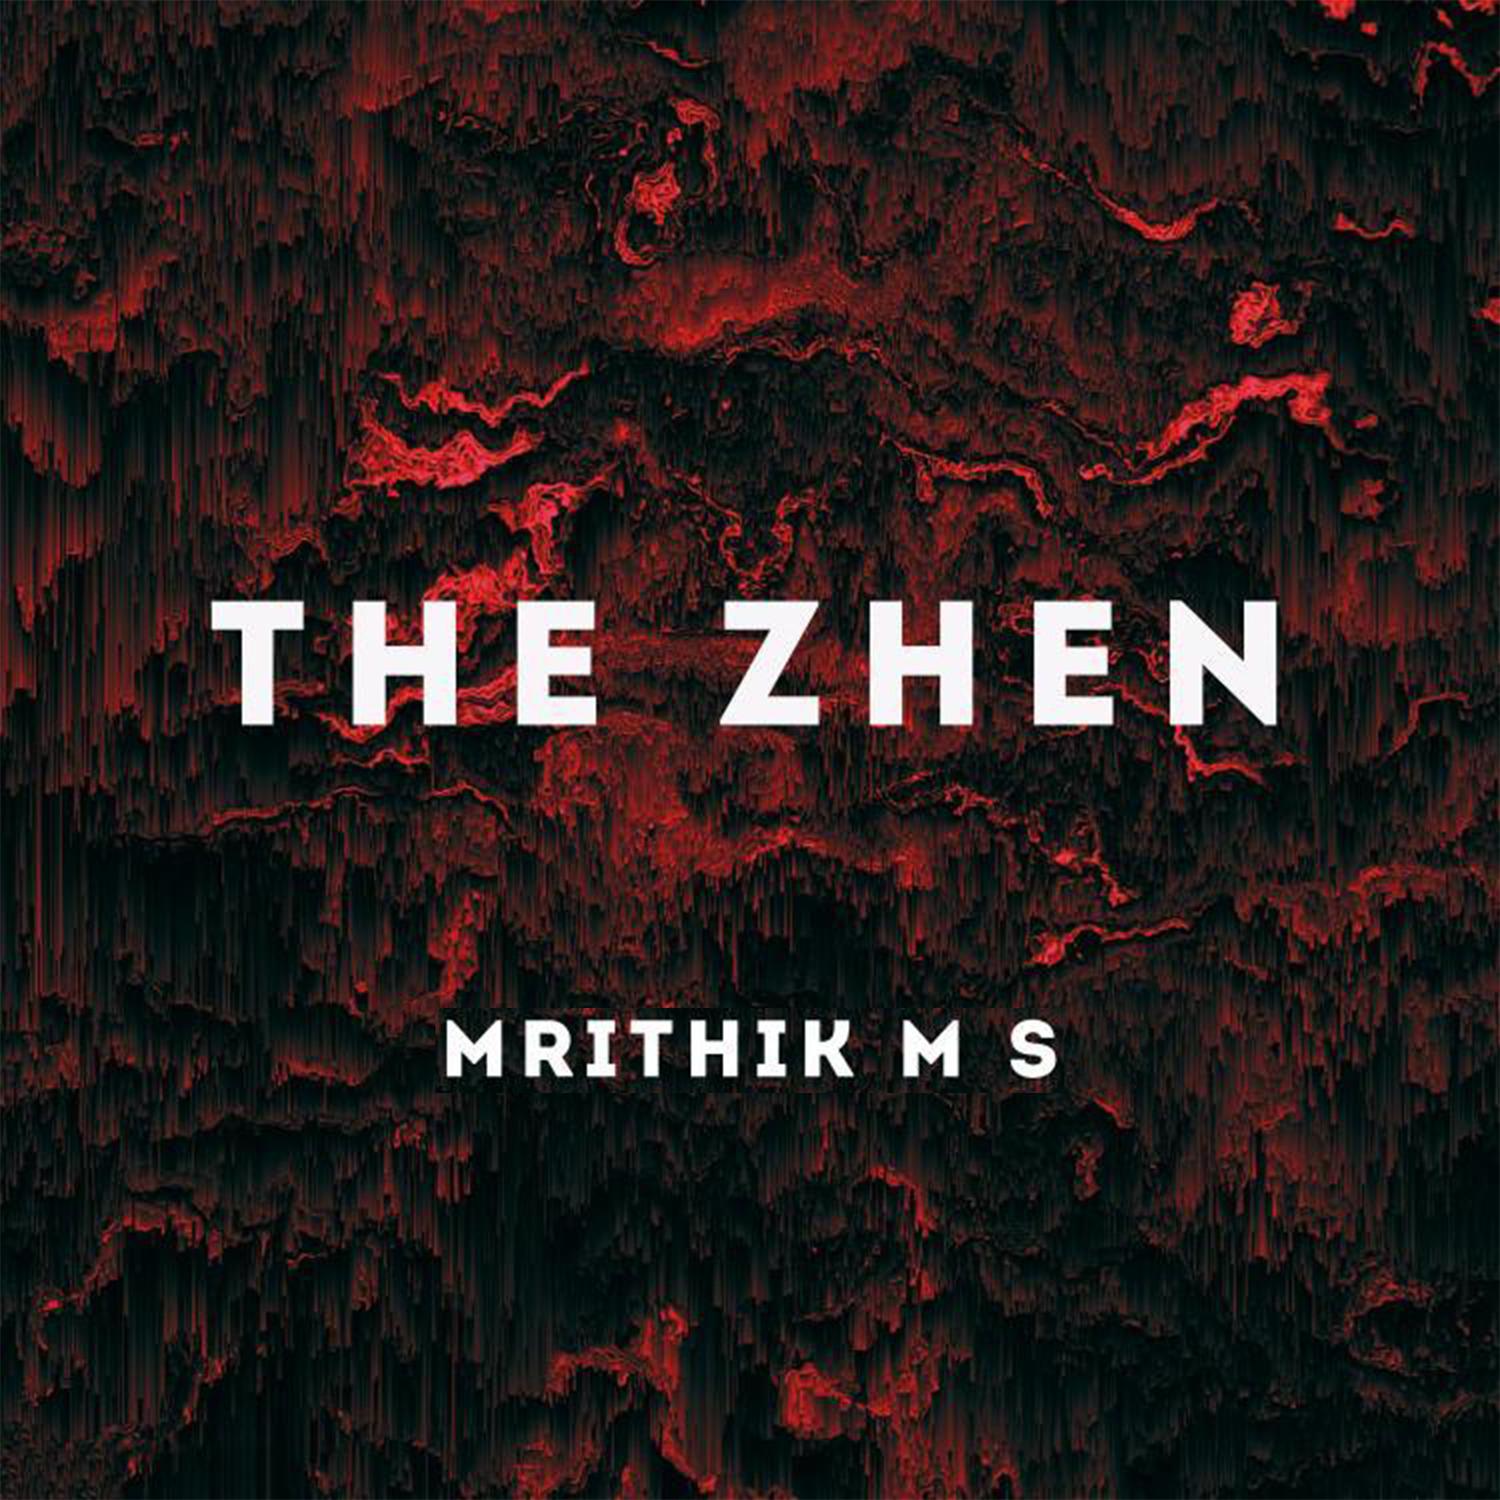 The Zhen